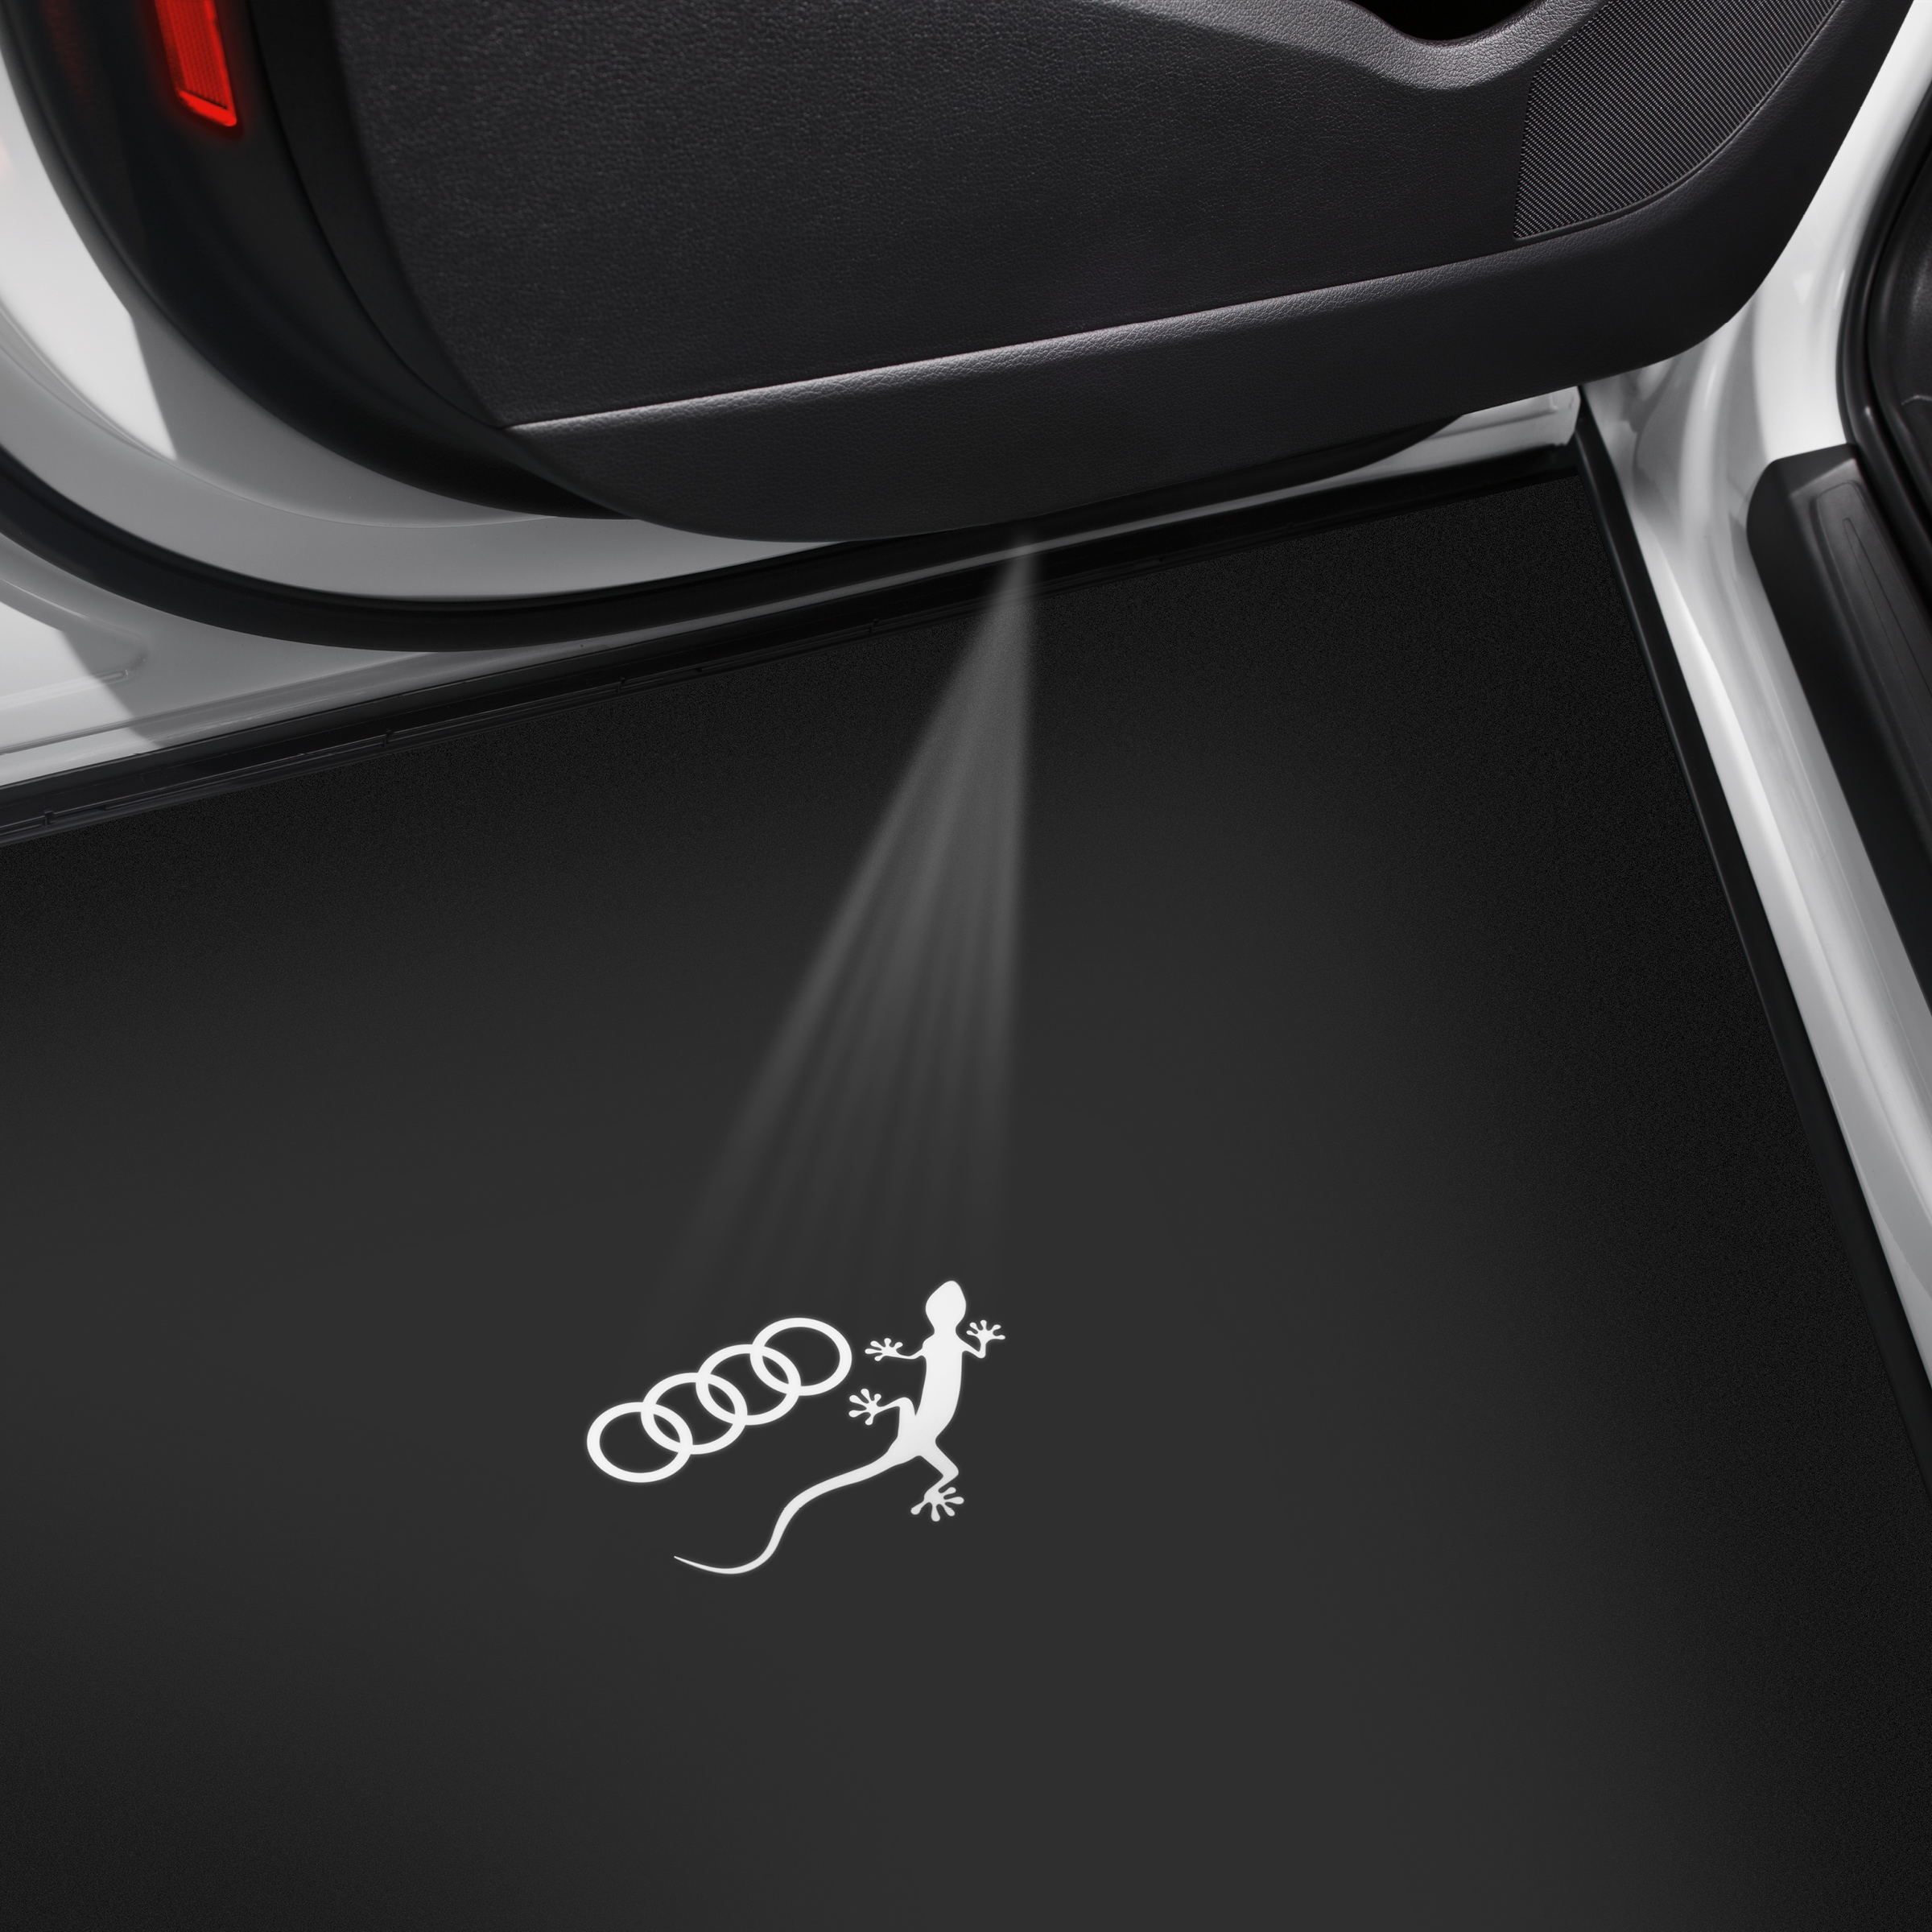 Einstiegs-LED Audi Ringe mit Gecko